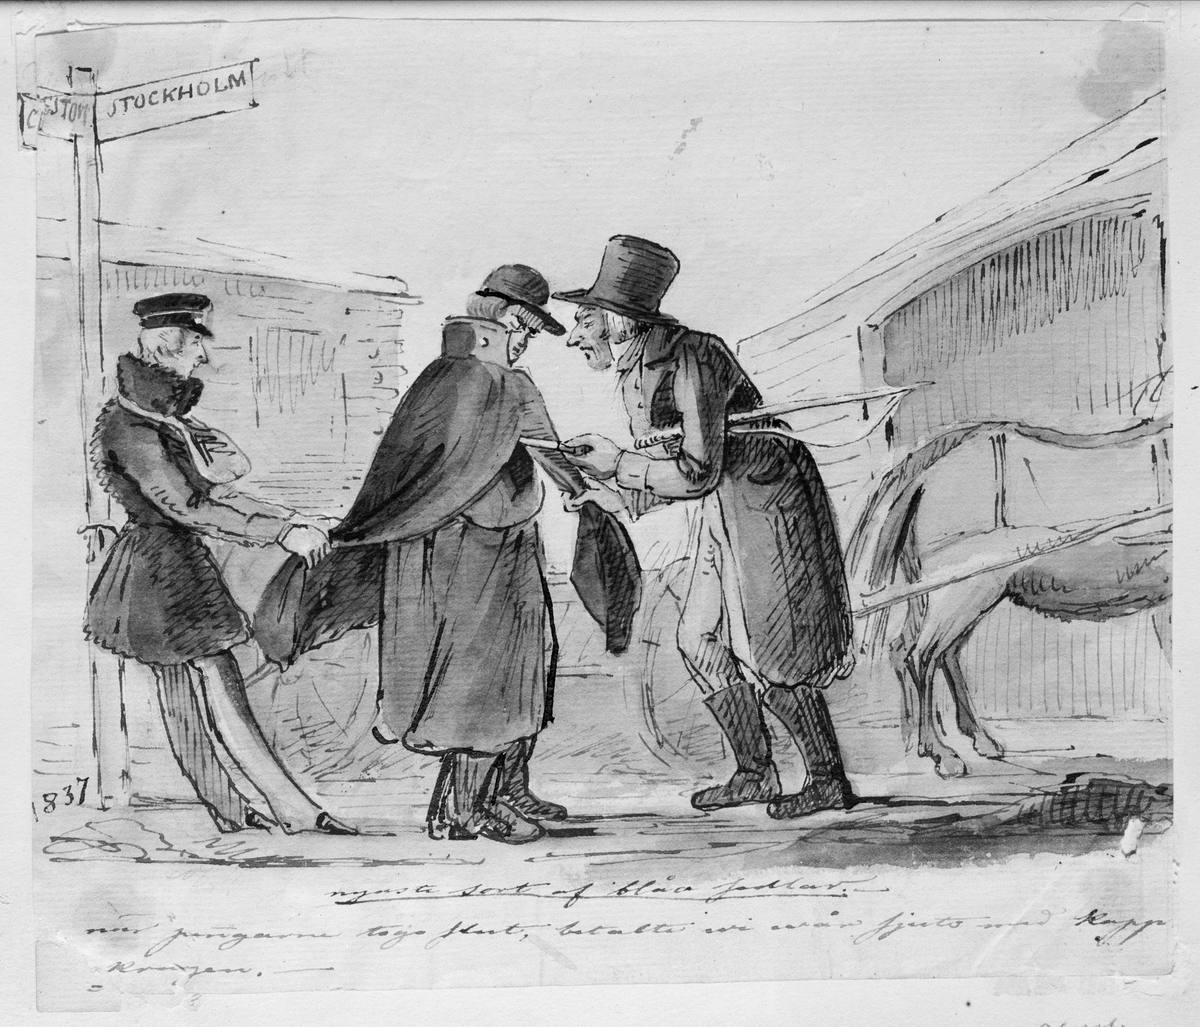 Hästskjuts. Nyaste sort af blåa sedlar. När pengarna togo slut, betalte vi vår skjuts med kappkragen.Teckning av Fritz von Dardel, 1837.